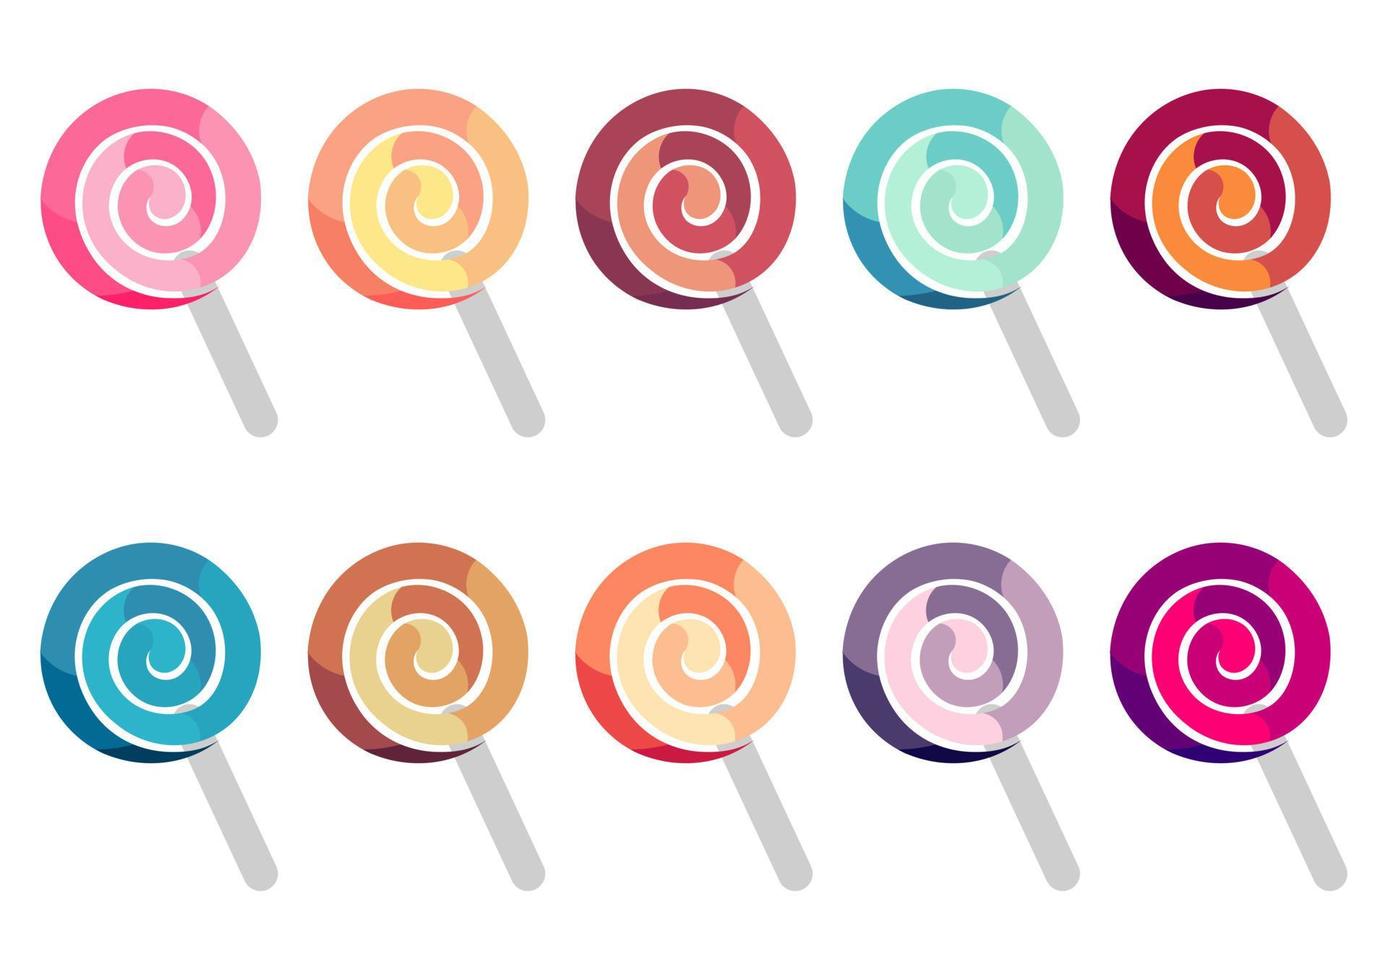 verzameling kleurrijke lolly-illustraties op een witte achtergrond vector